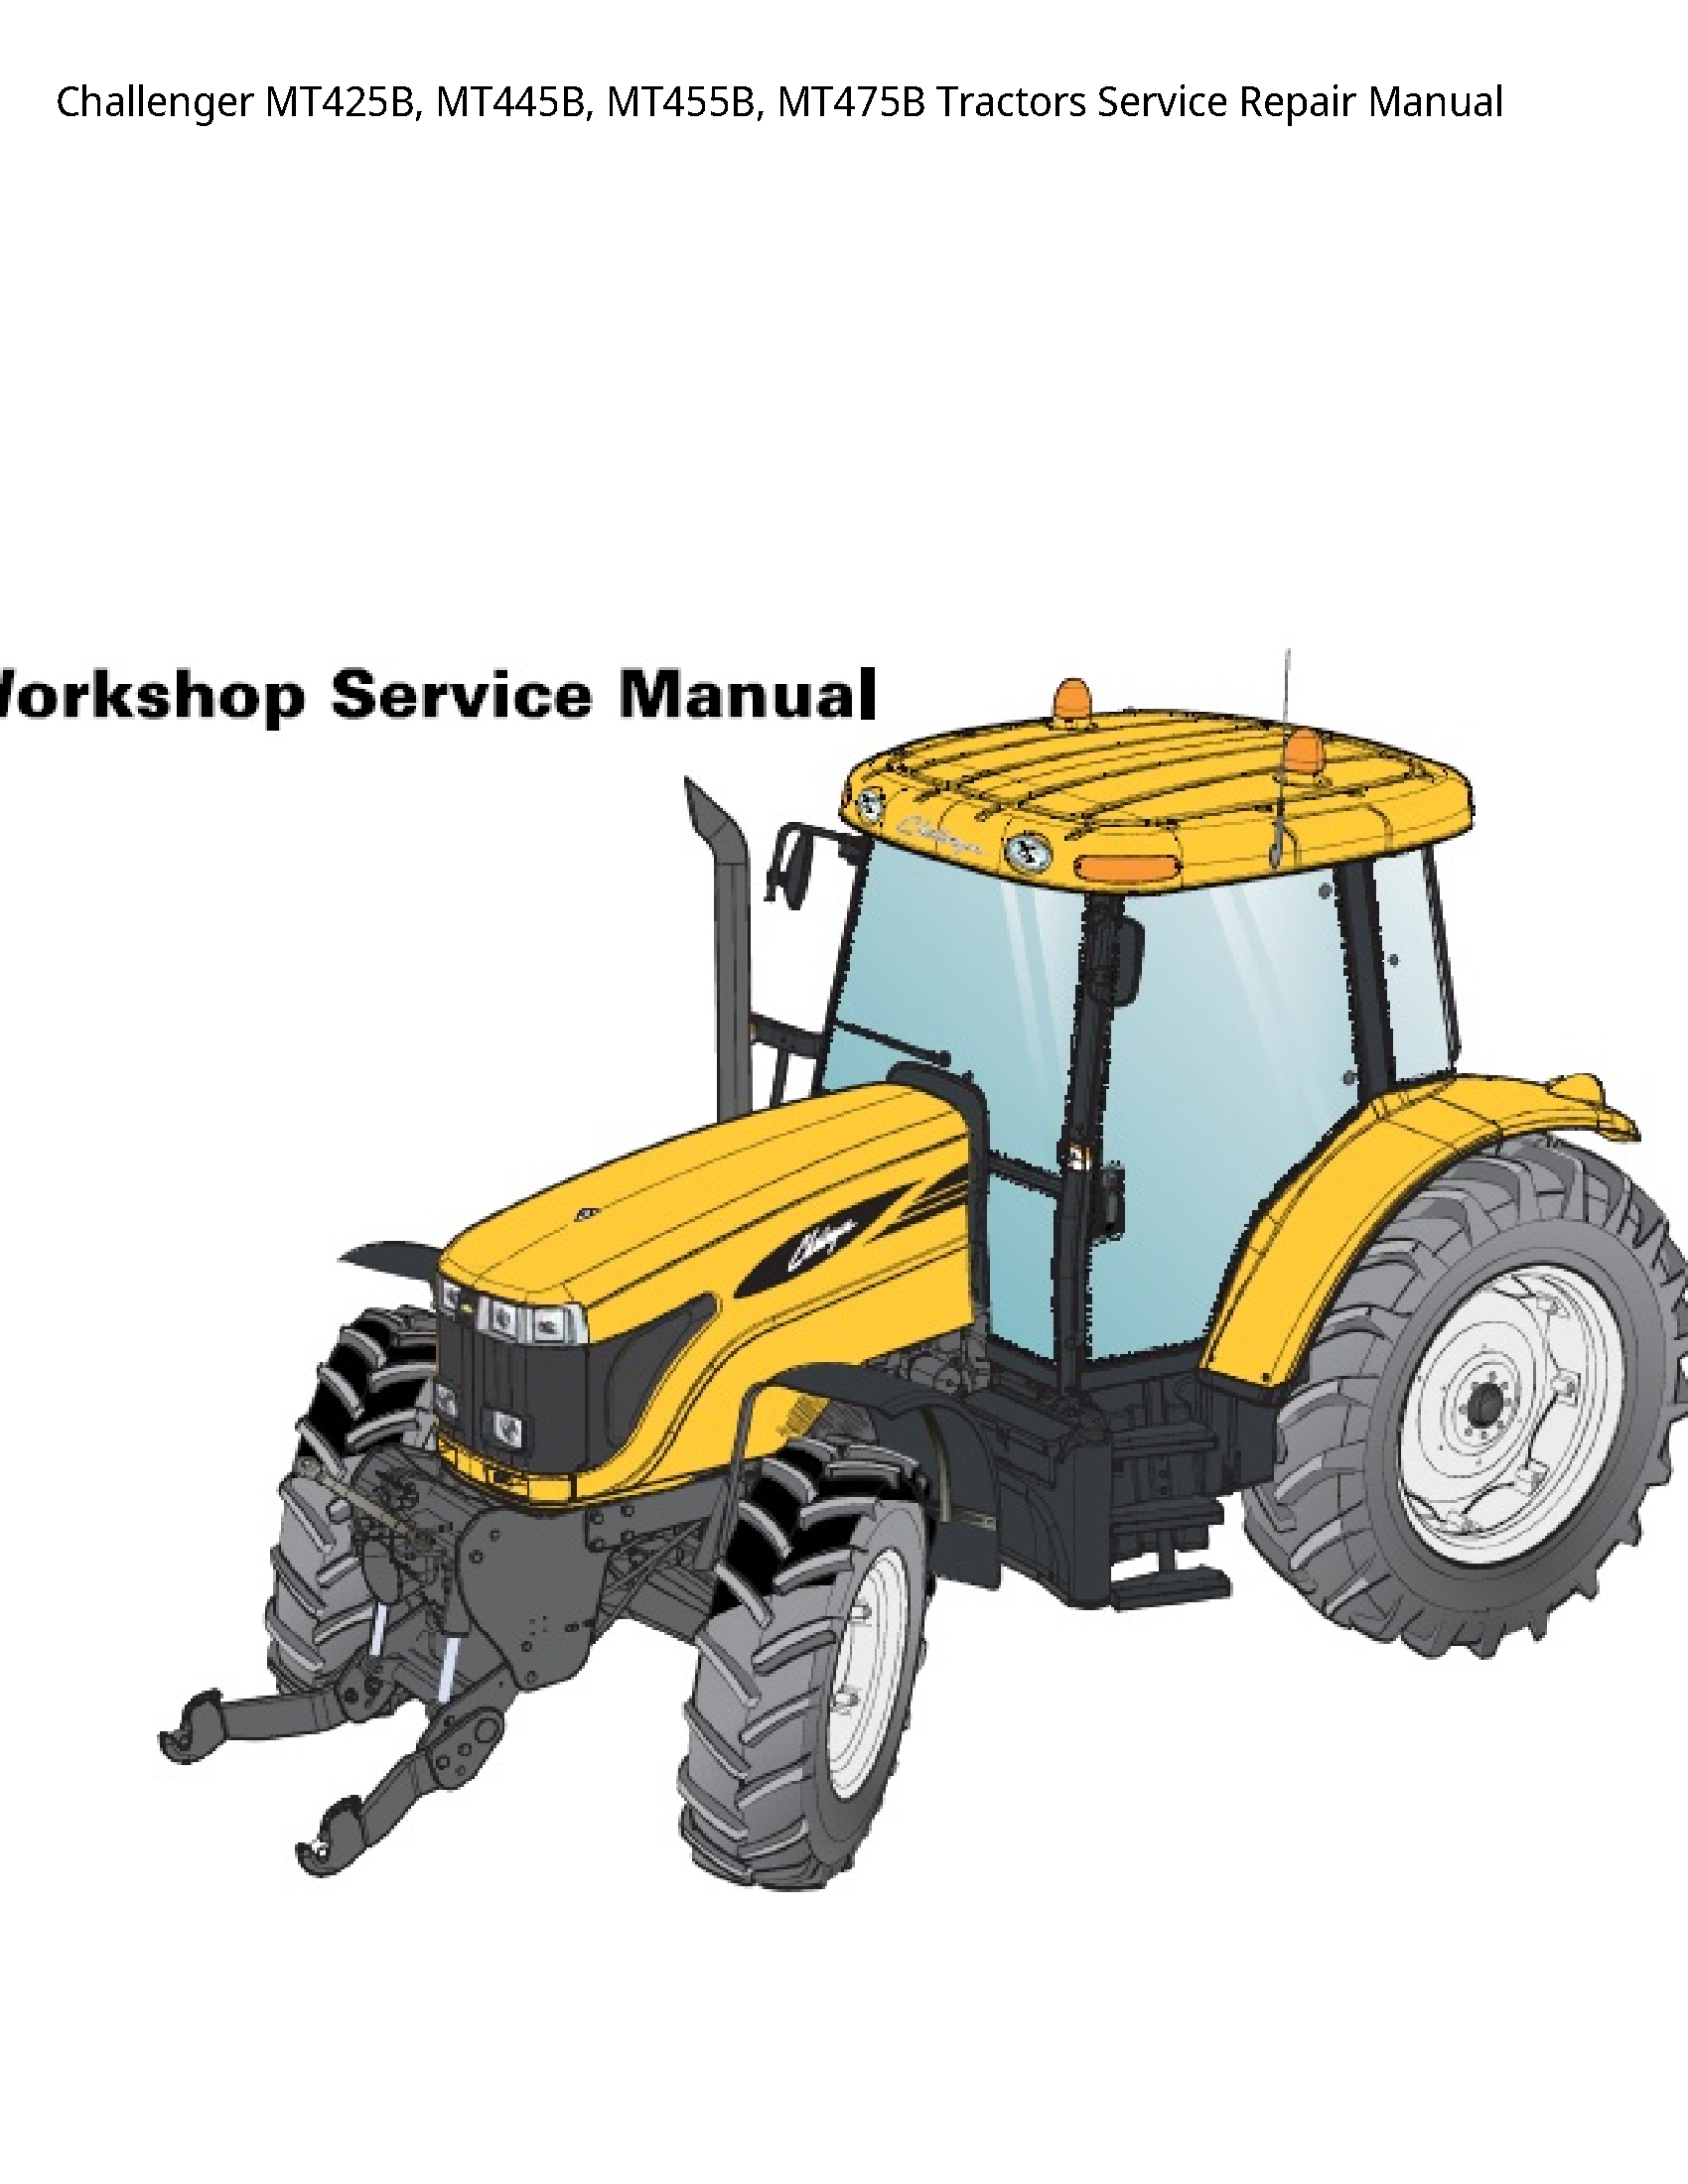 Challenger MT425B Tractors manual